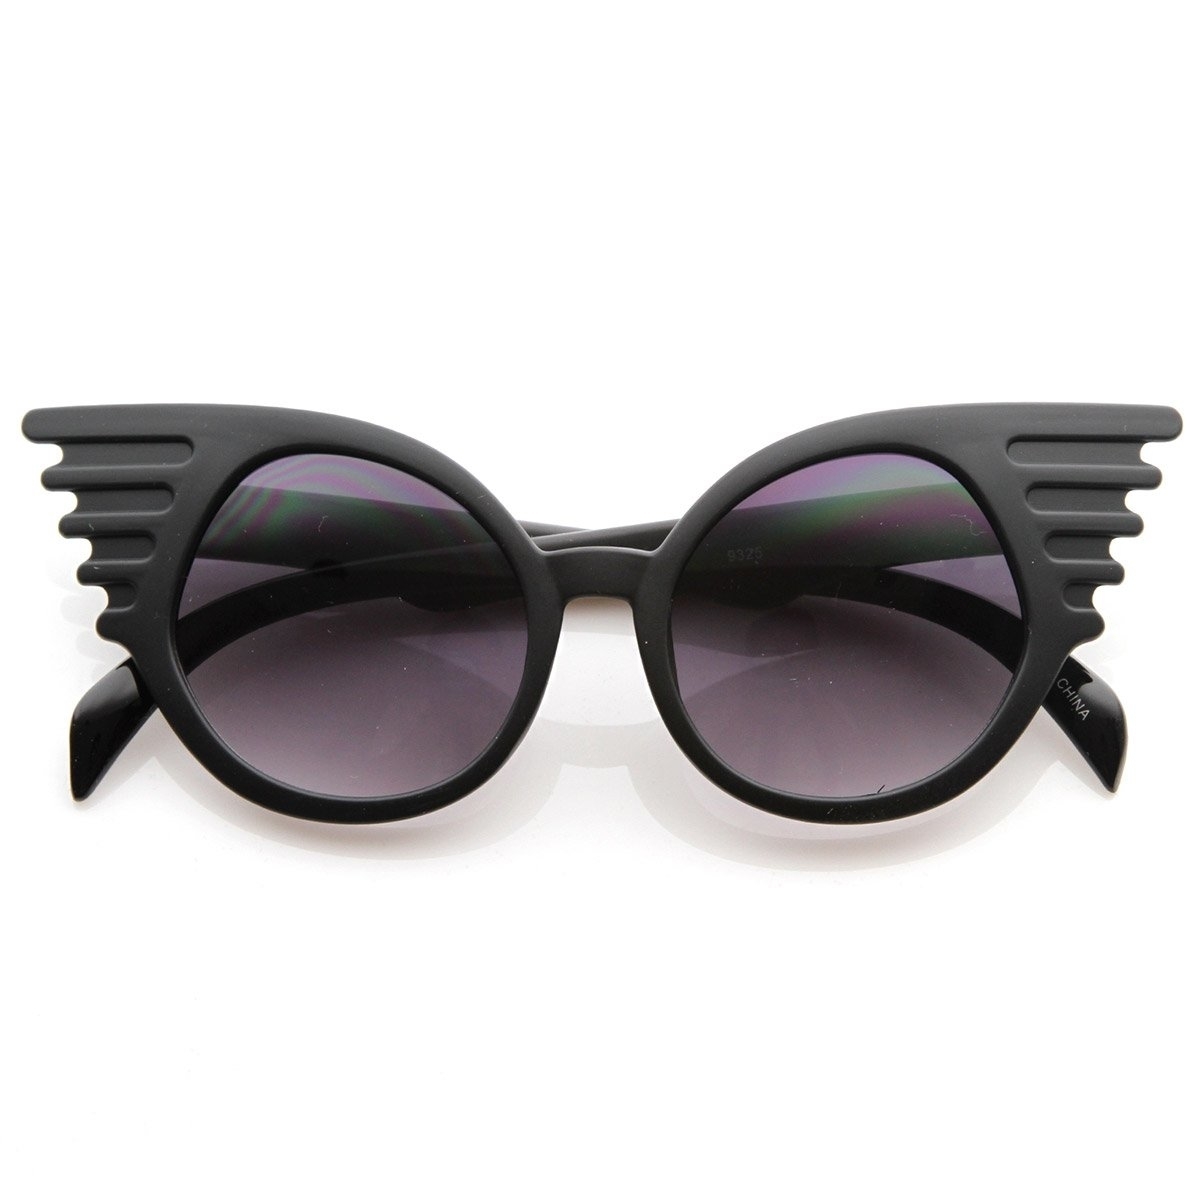 Designer Inspired Fashion Eccentric Unique Round Circle Winged Sunglasses - Black